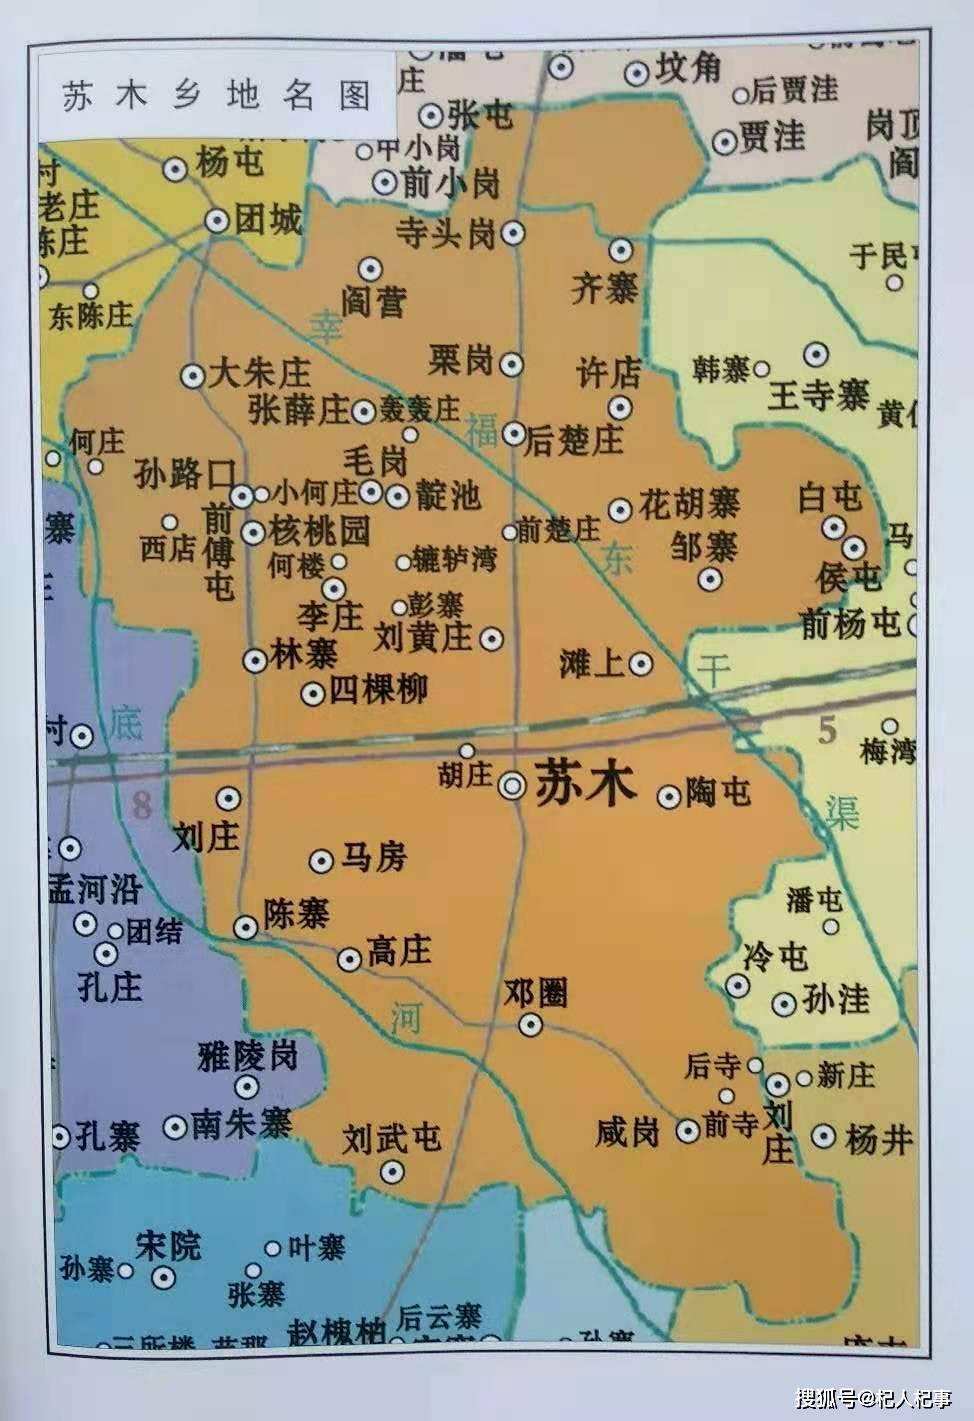 四棵柳 在杞县城西南12公里,苏木西北2公里处.